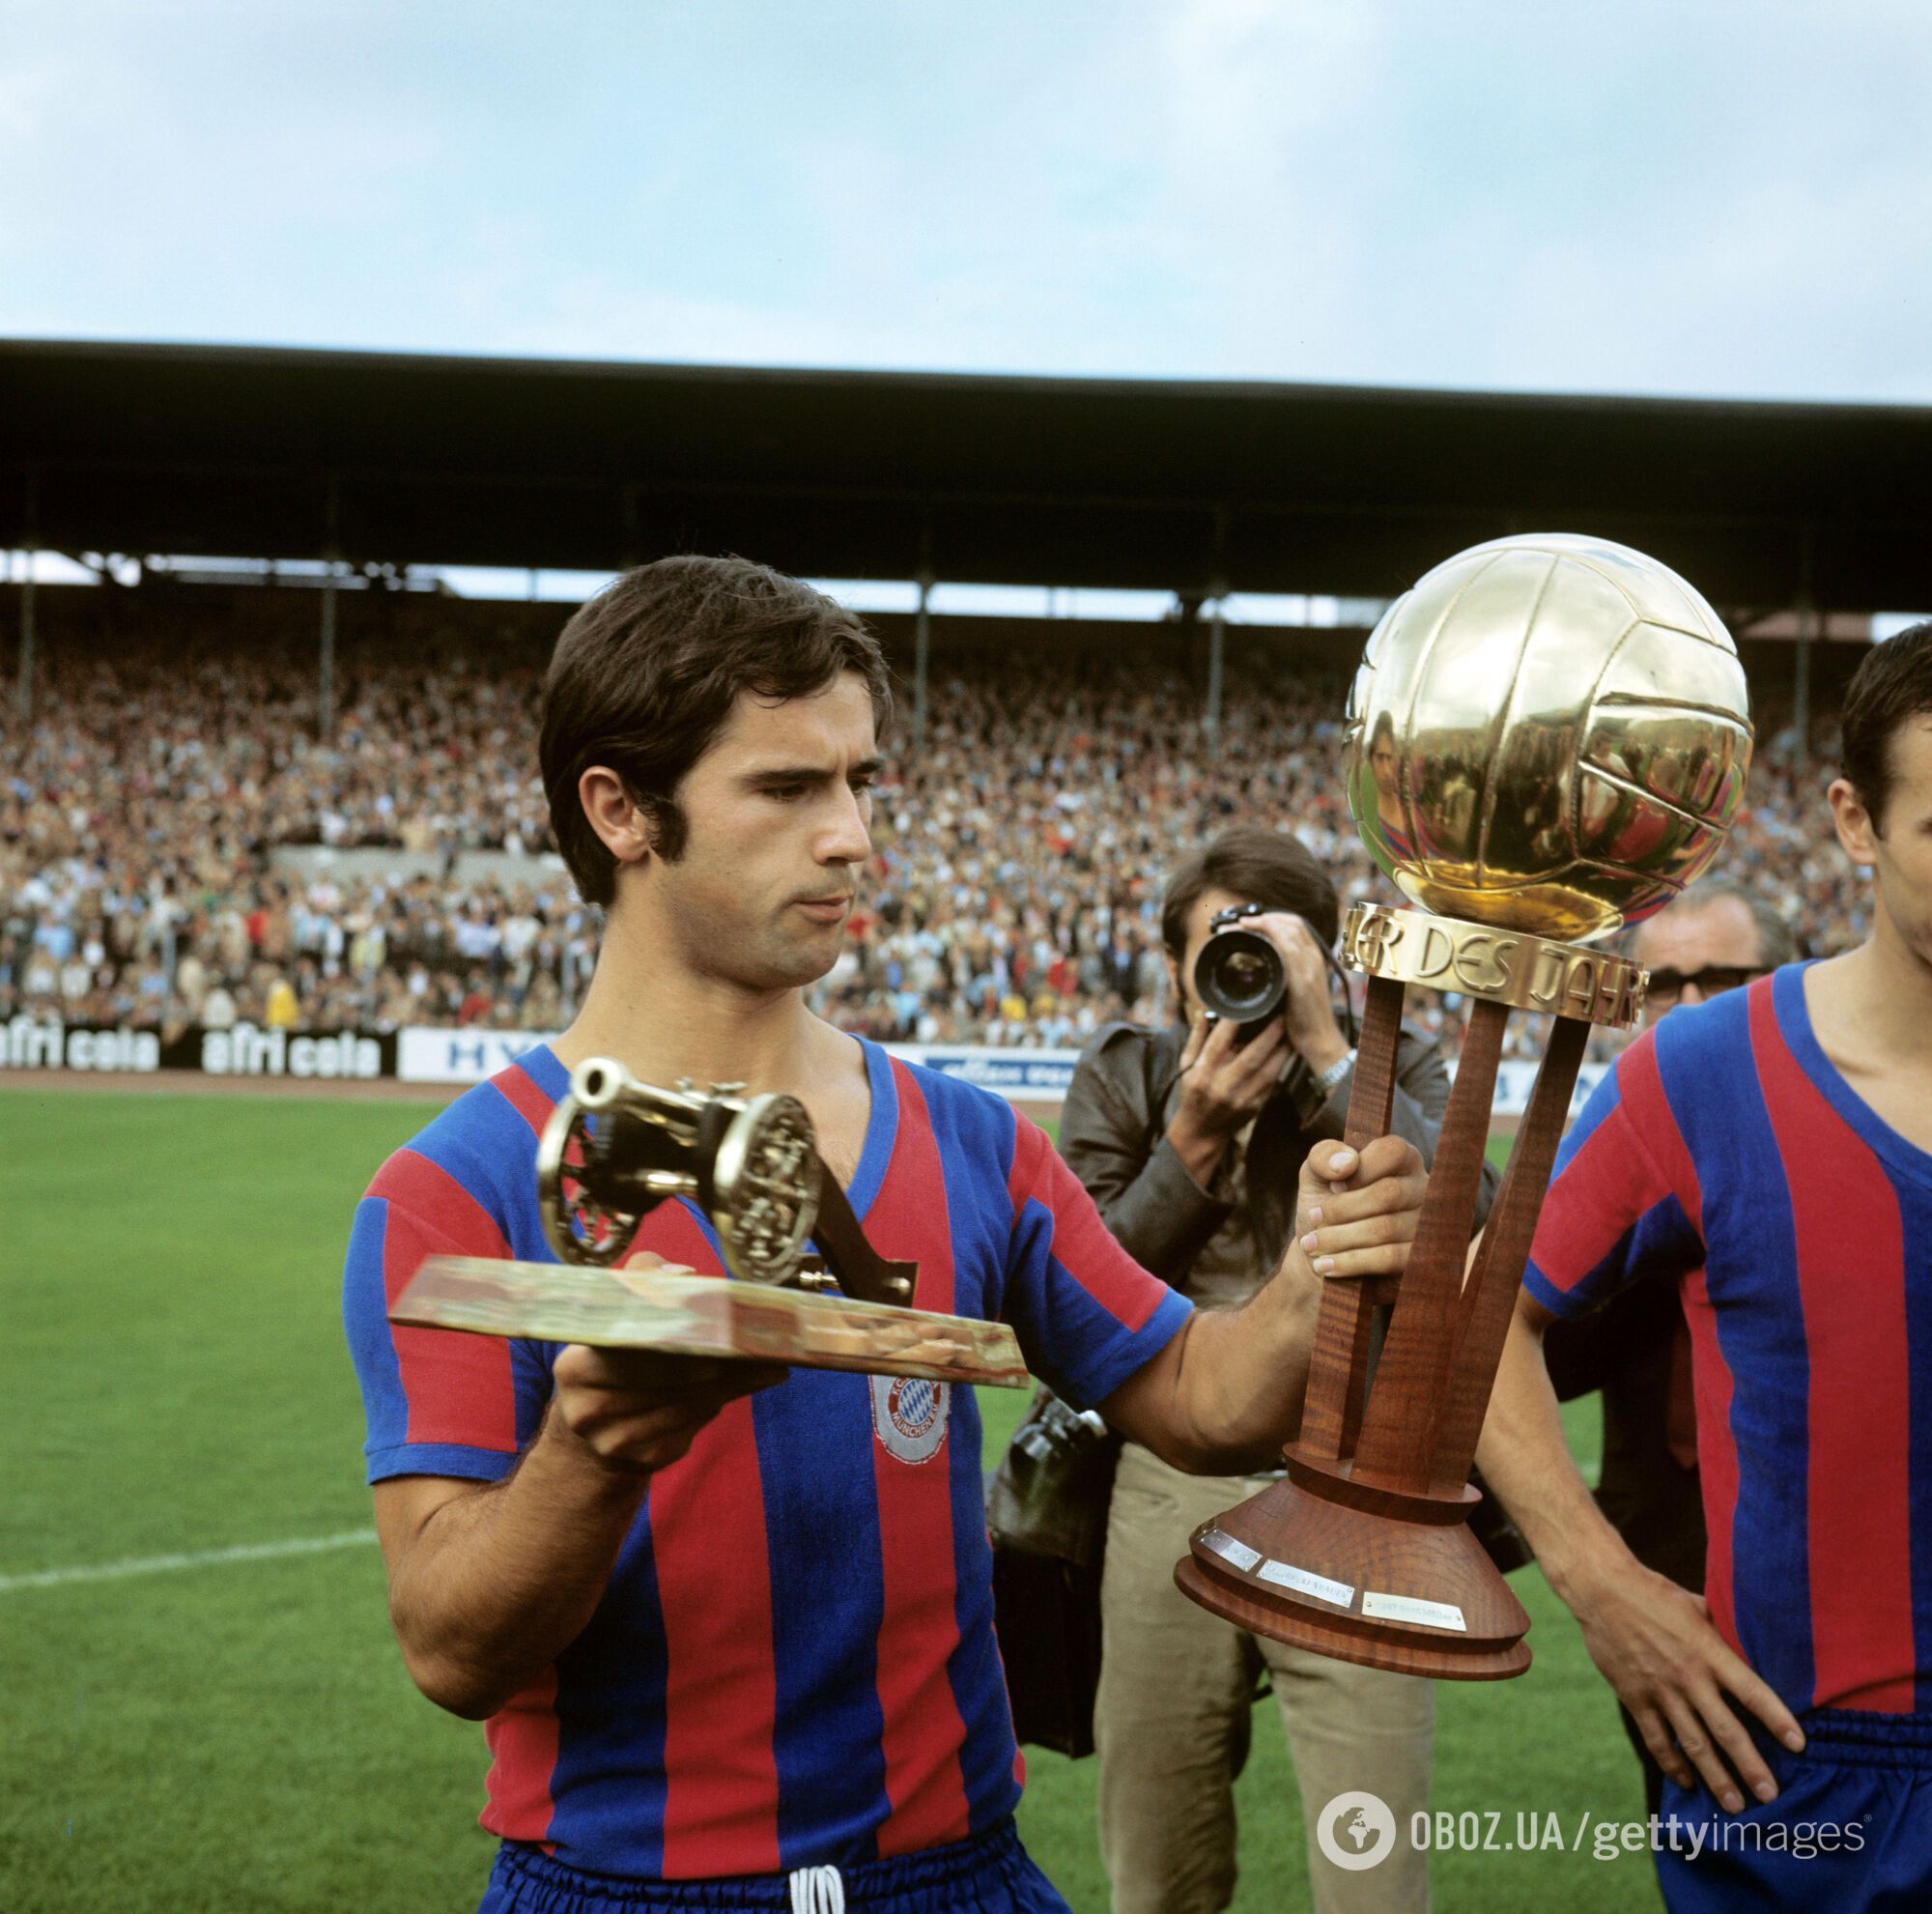 Мюллер в 1969 году выиграл Кубок ФРГ